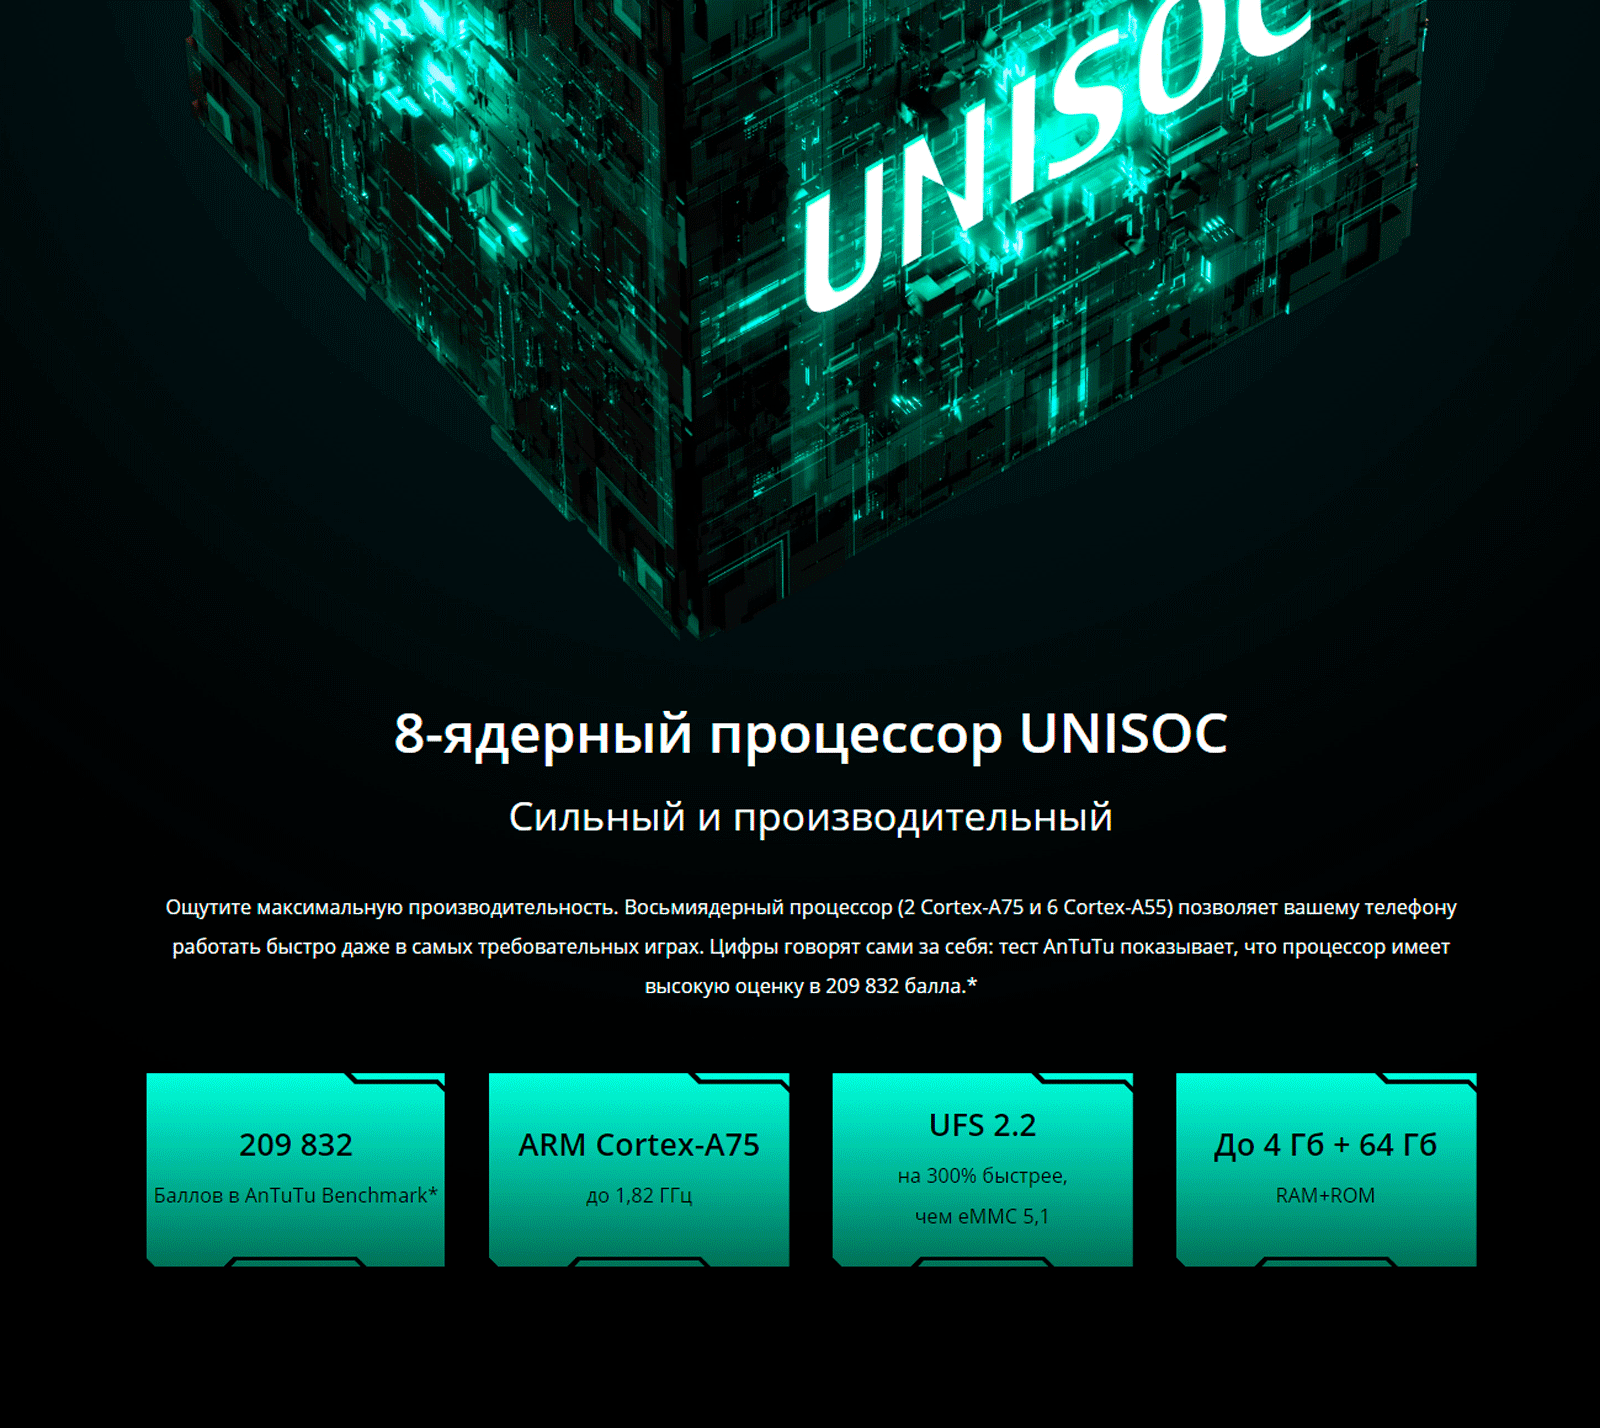 8-ядерный процессор UNISOC